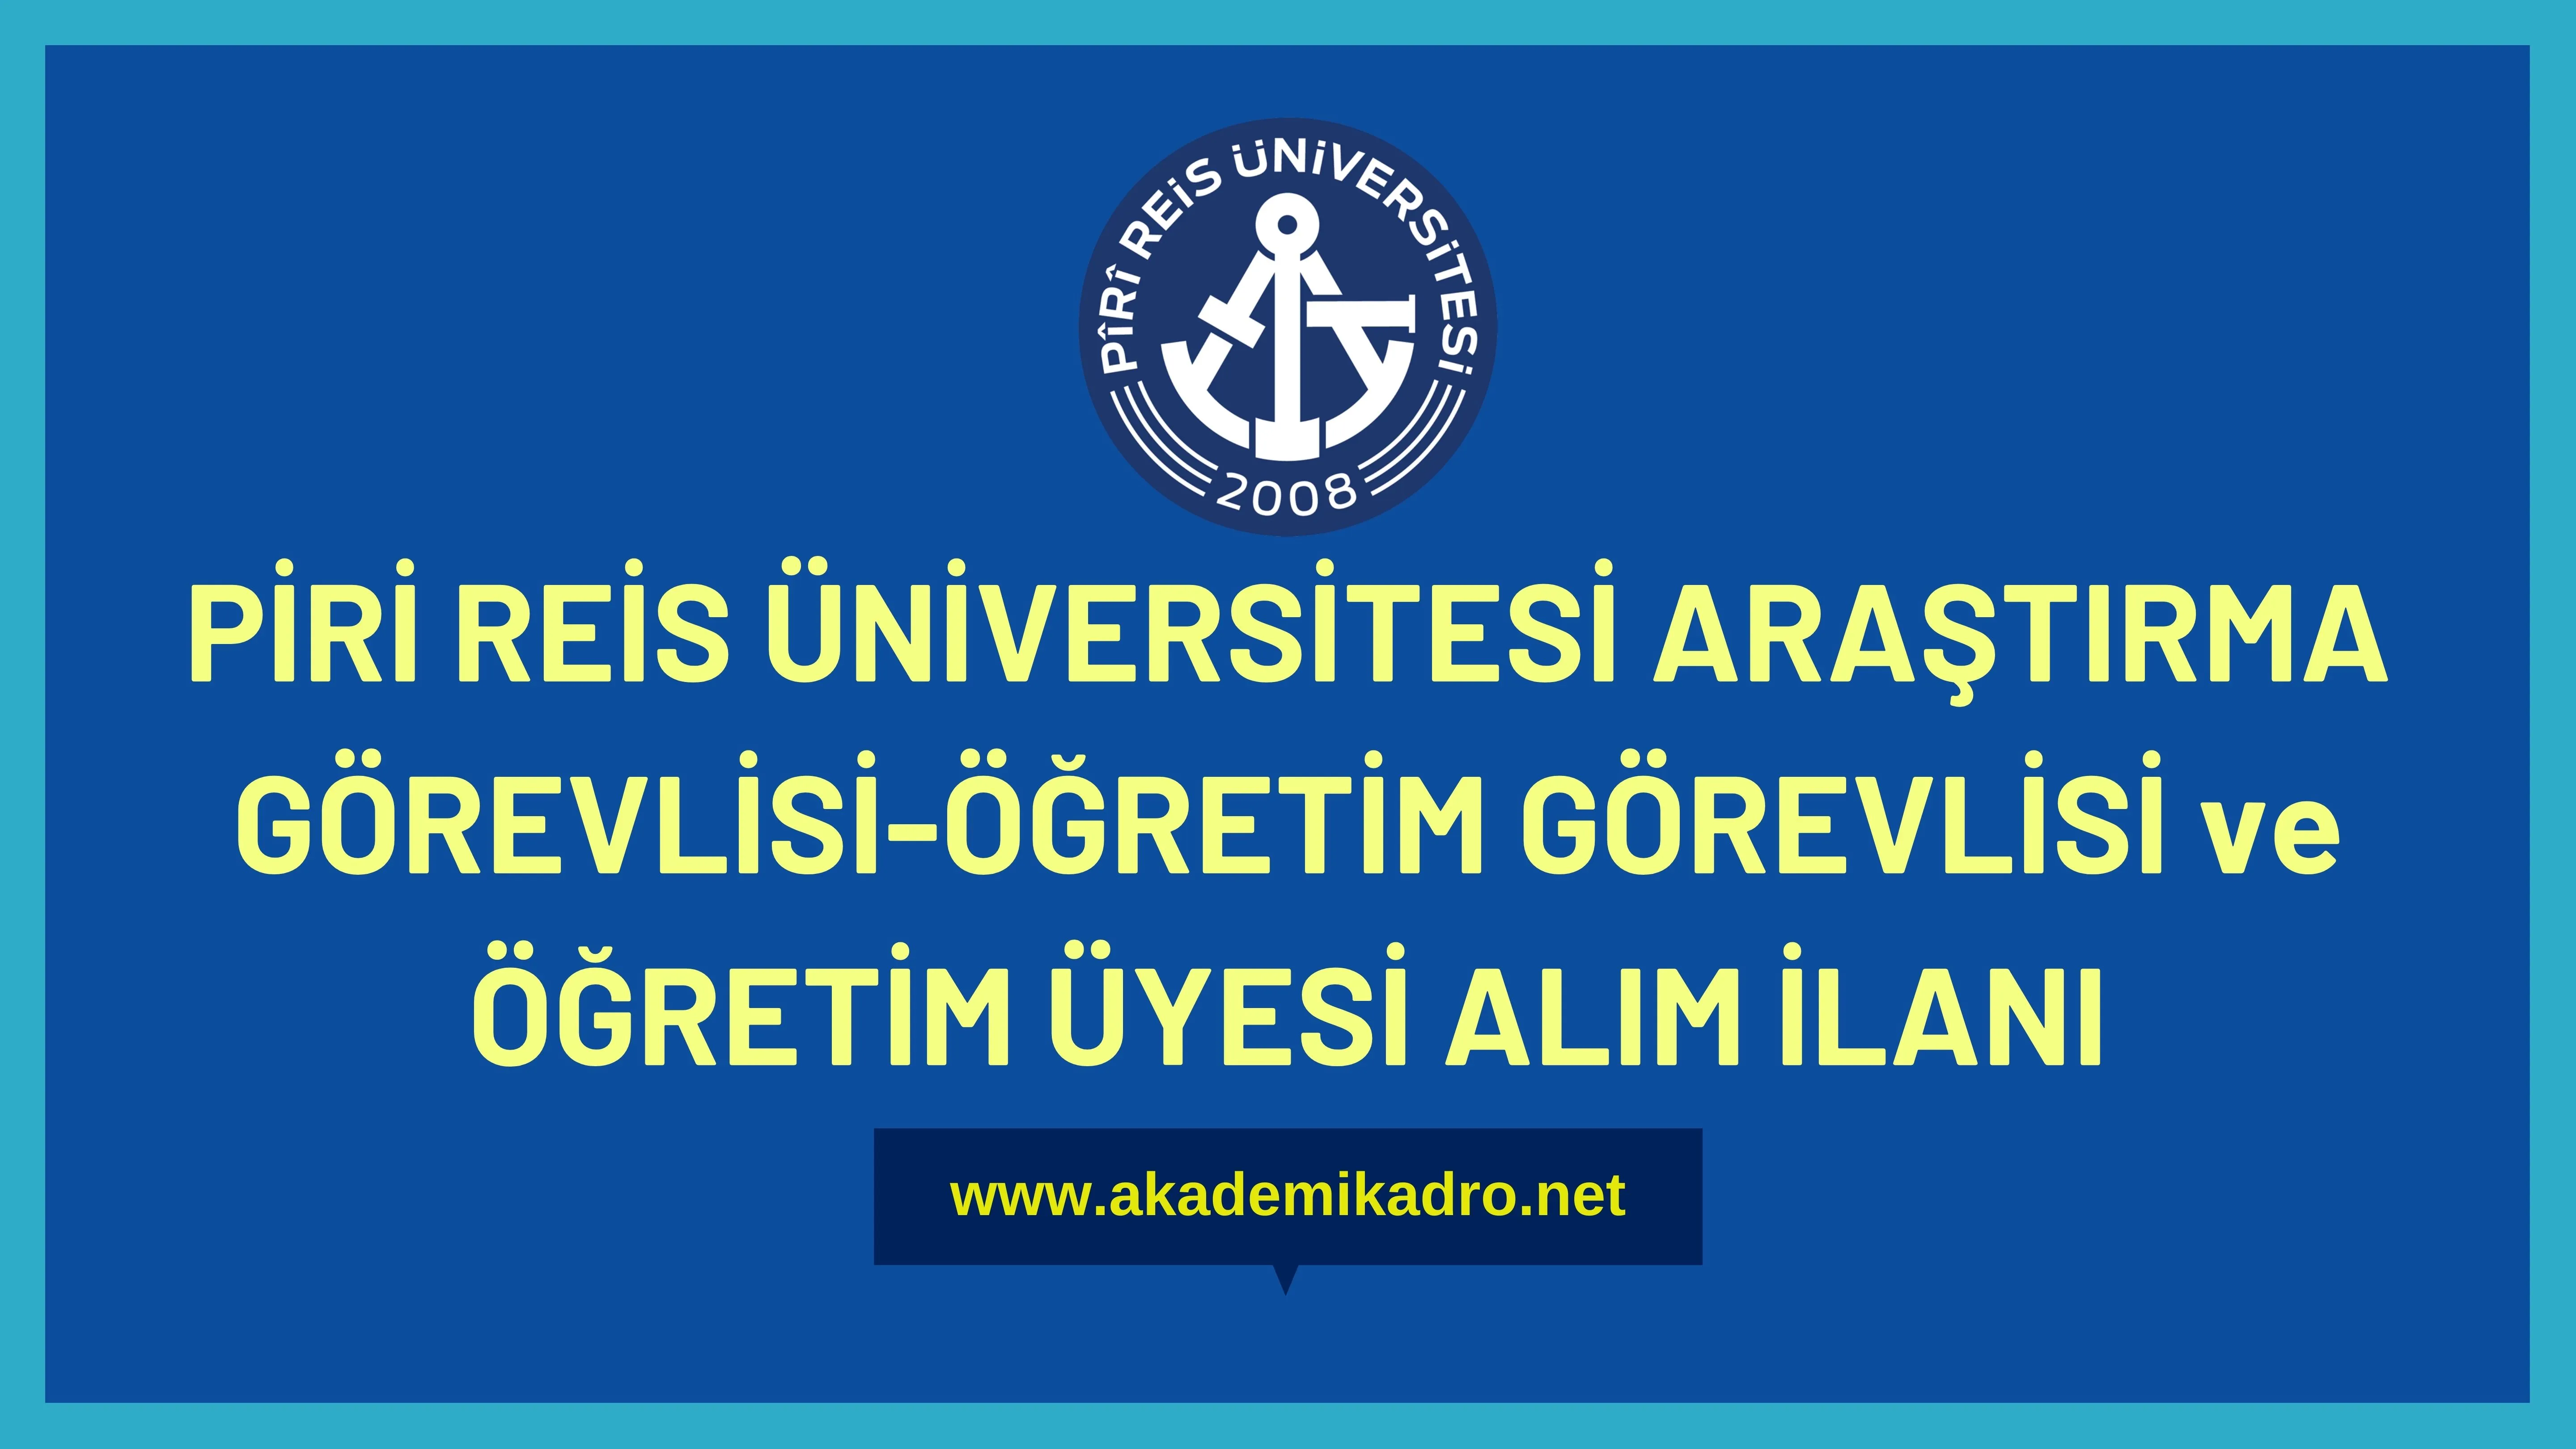 Piri Reis Üniversitesi 12 Araştırma görevlisi, 13 Öğretim görevlisi ve 24 Öğretim üyesi alacak.